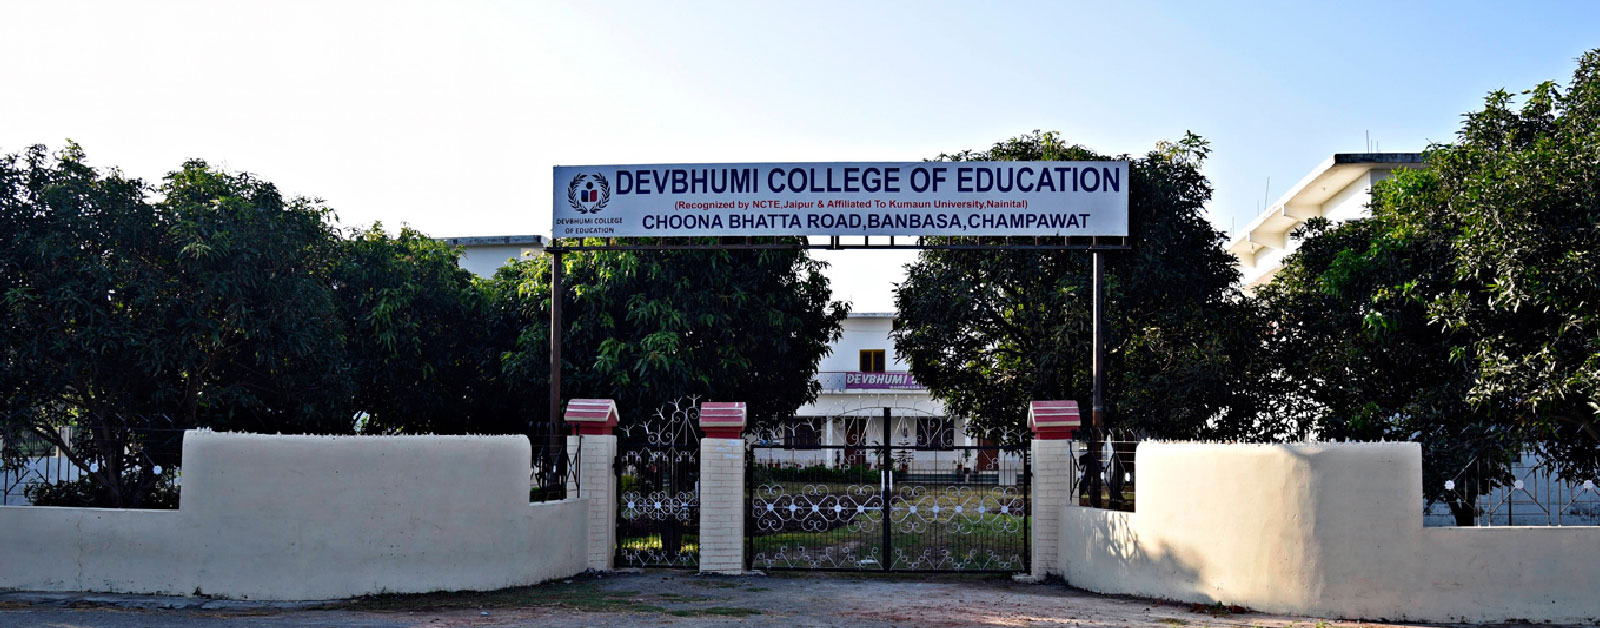  Devbhumi College of Education